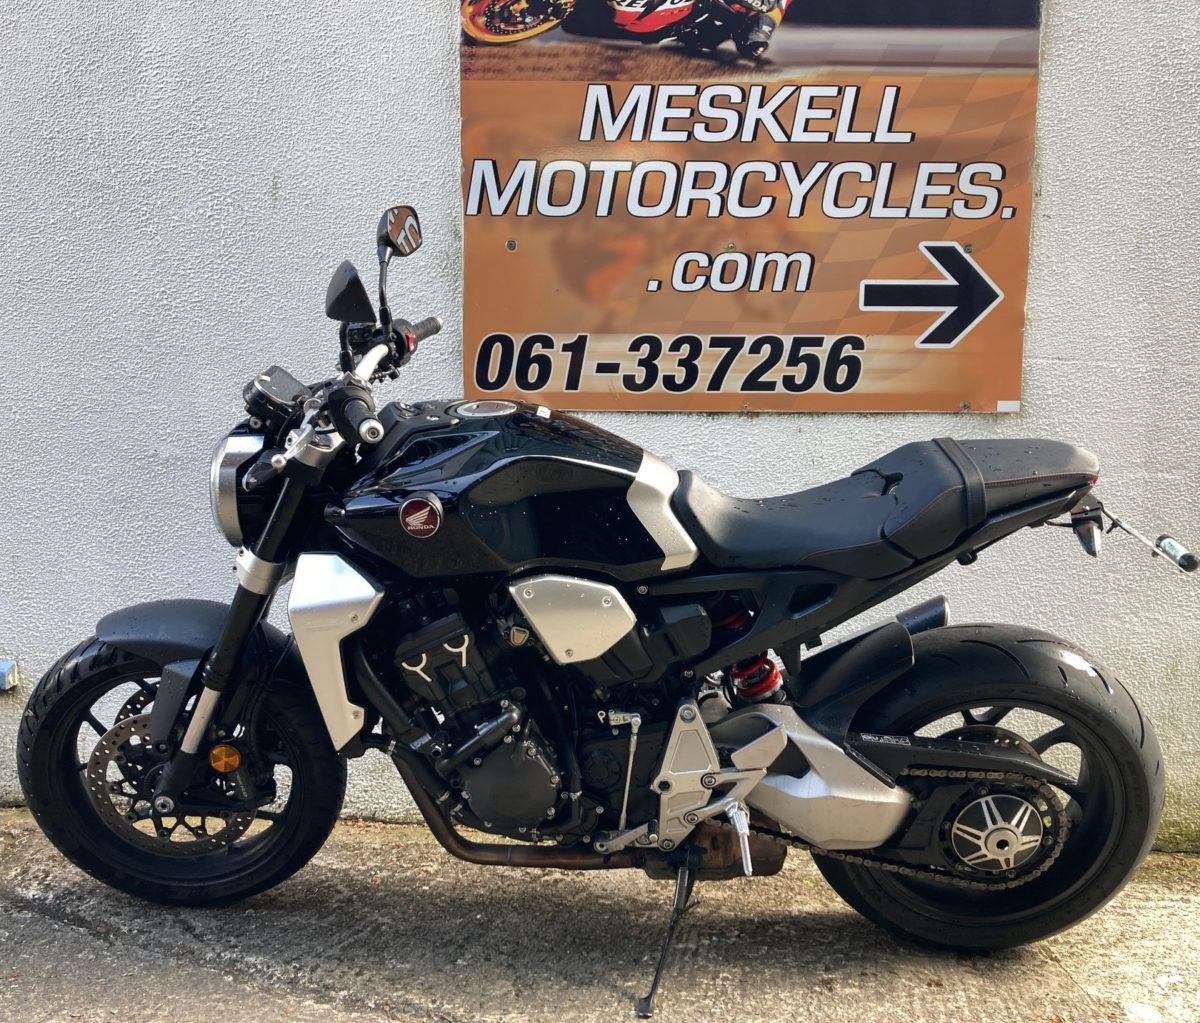 2019 Honda Cb1000r Meskell Motorcycles 6267